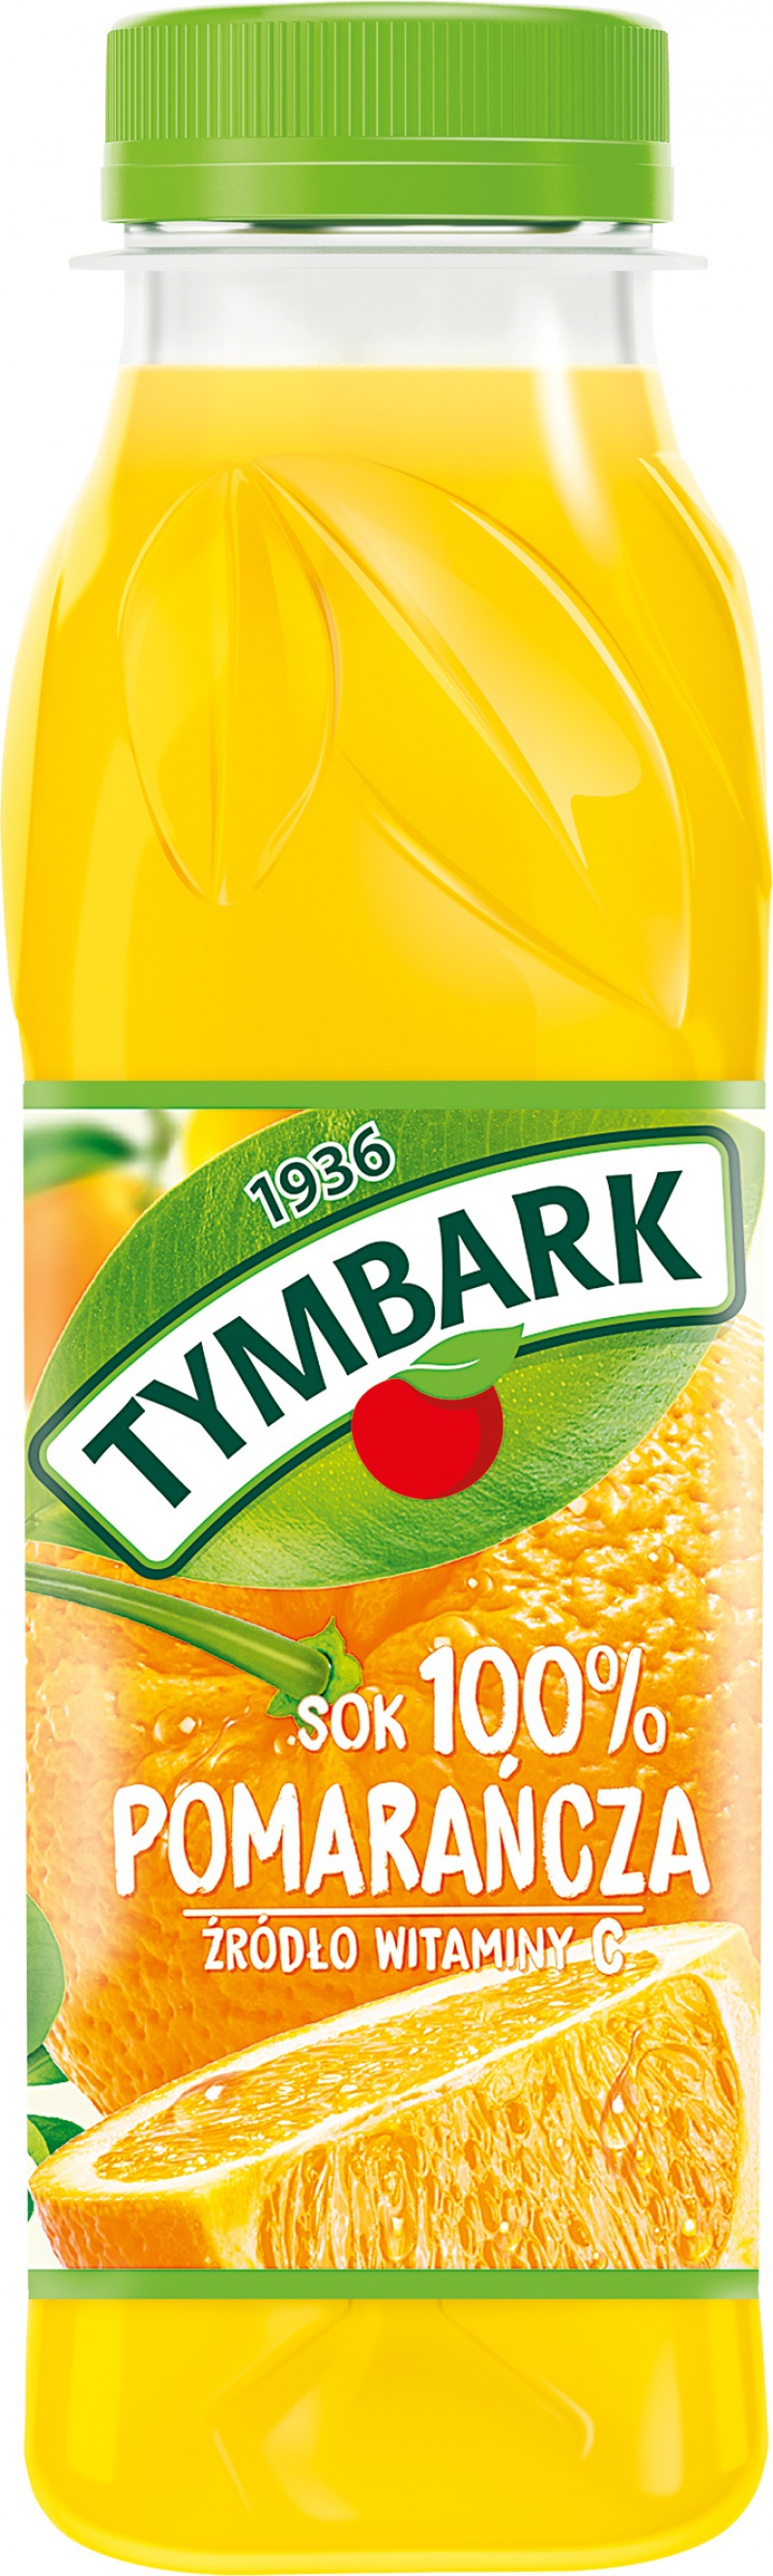 Sok TYMBARK, 0,3 l, pomarańczowy